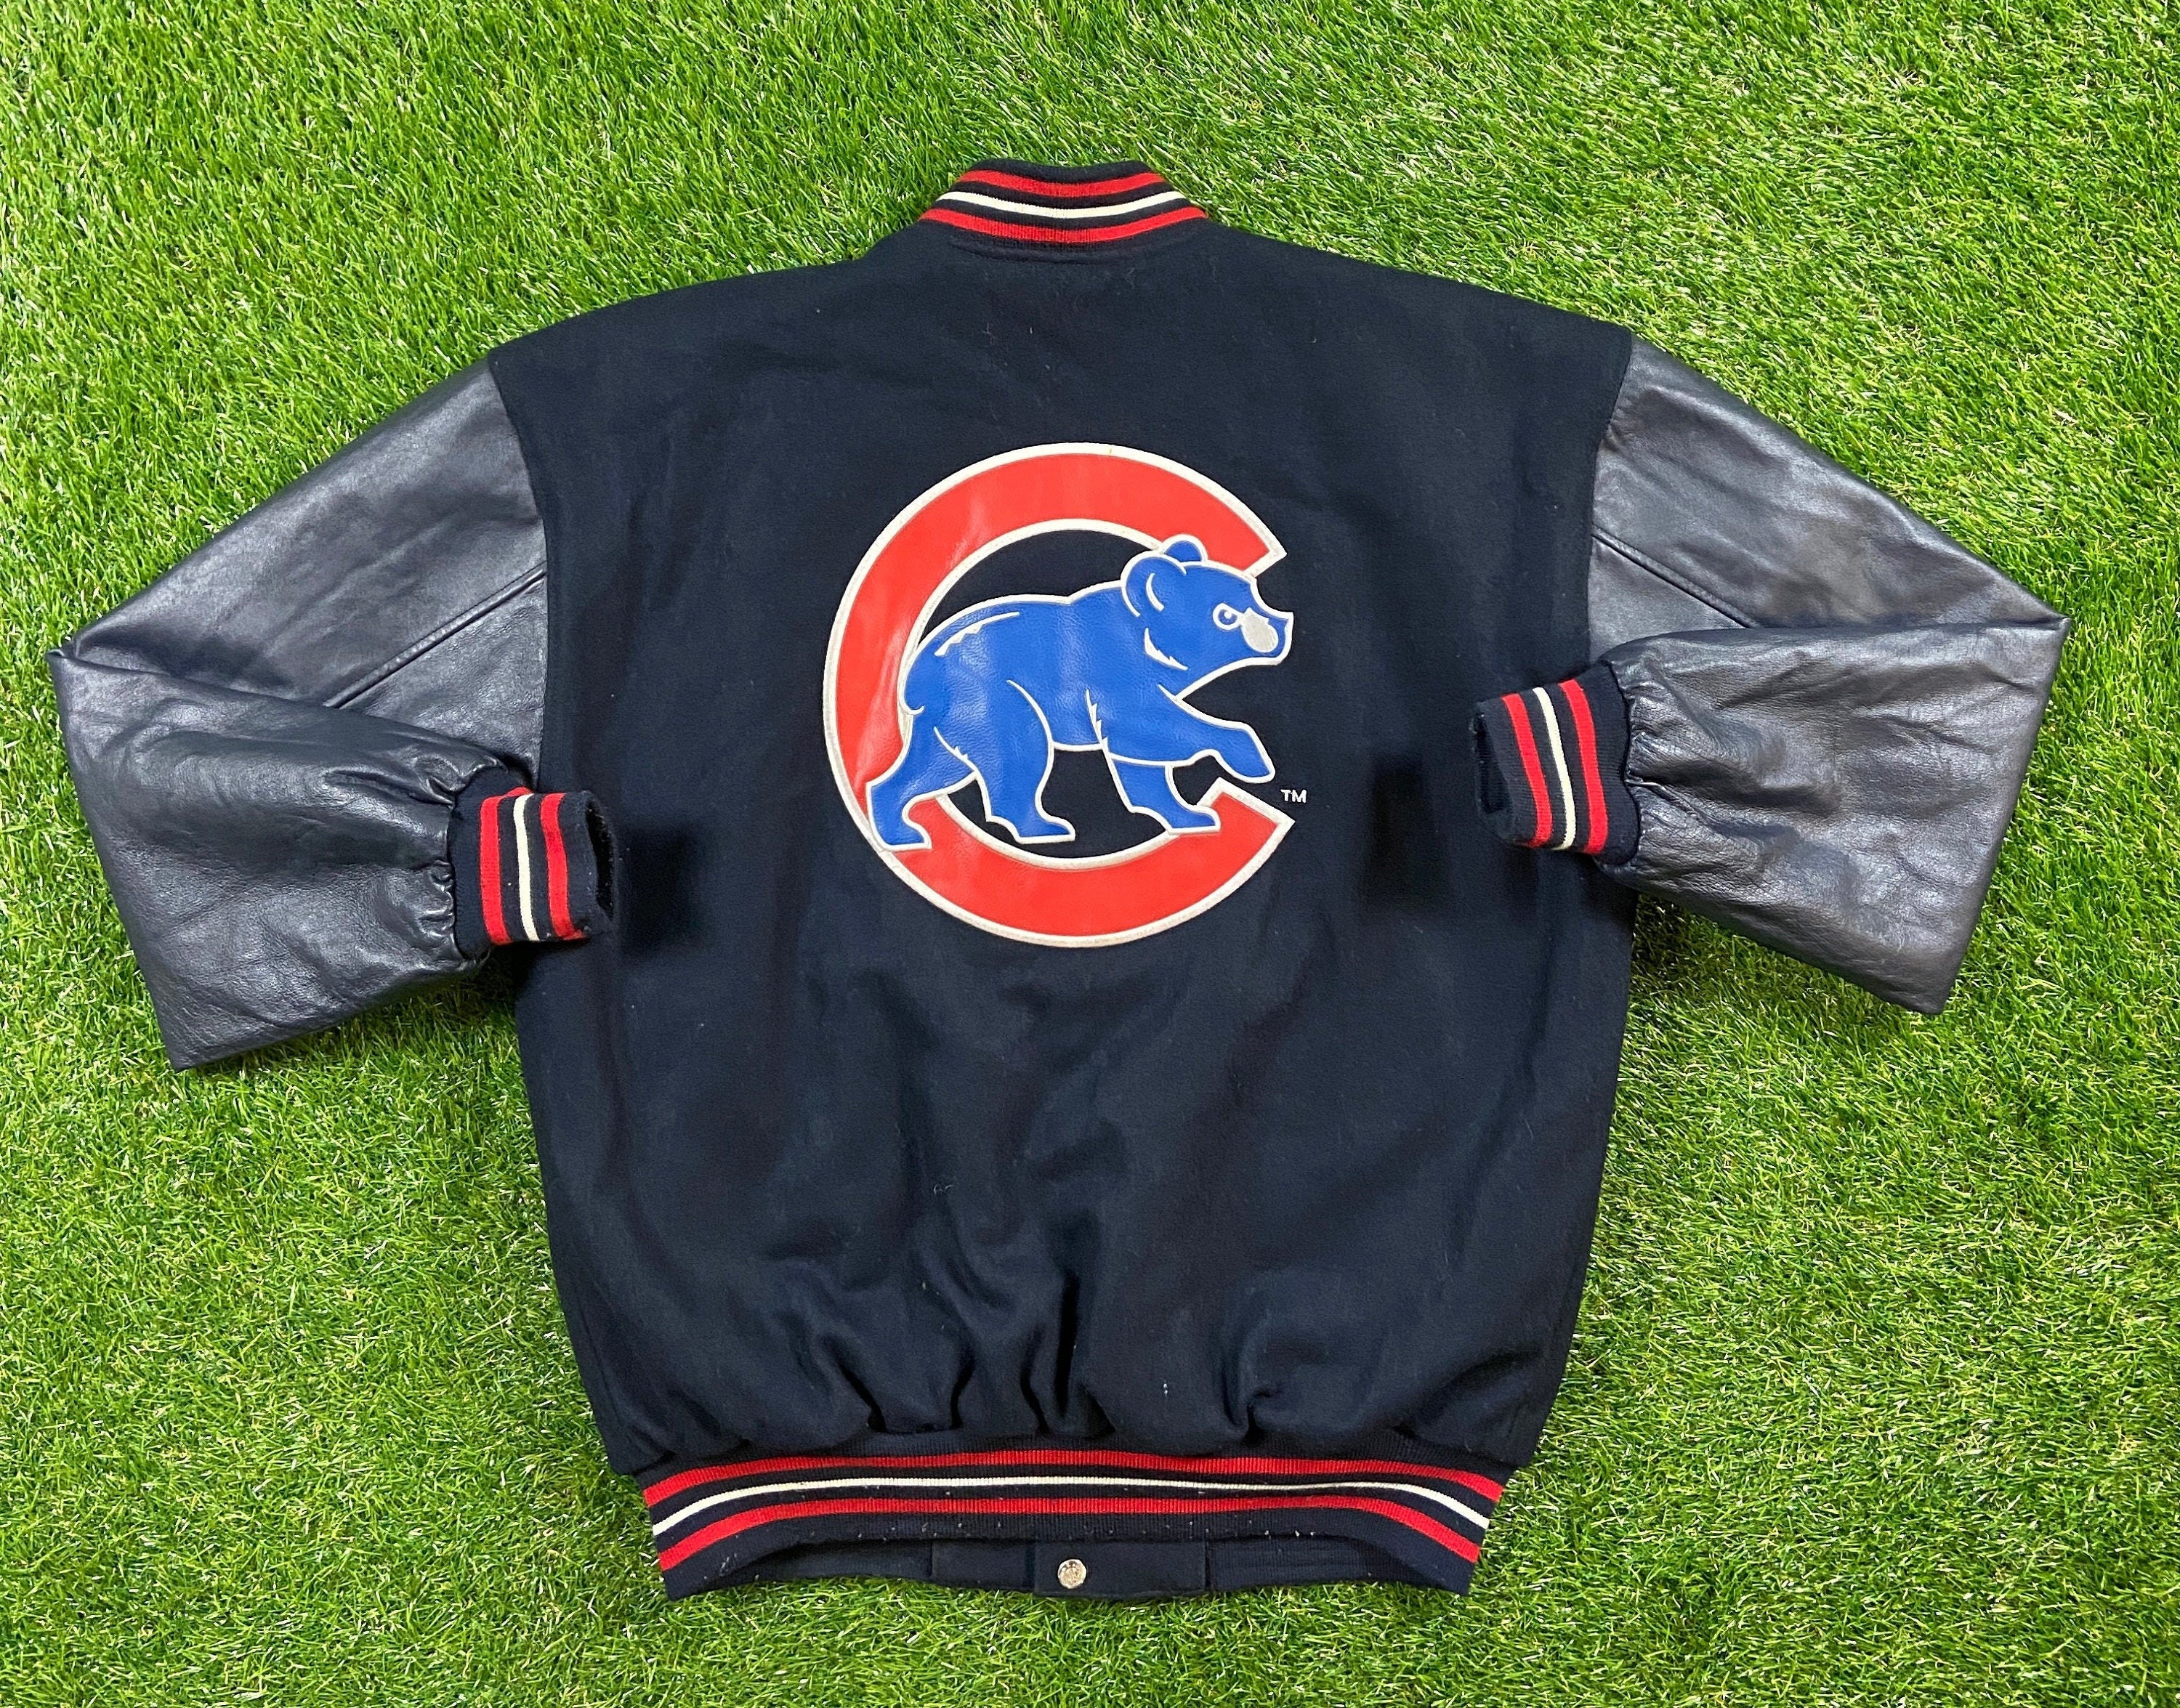 Vintage 1990's MLB CUBS Reversible Varsity Jacket Sz. S